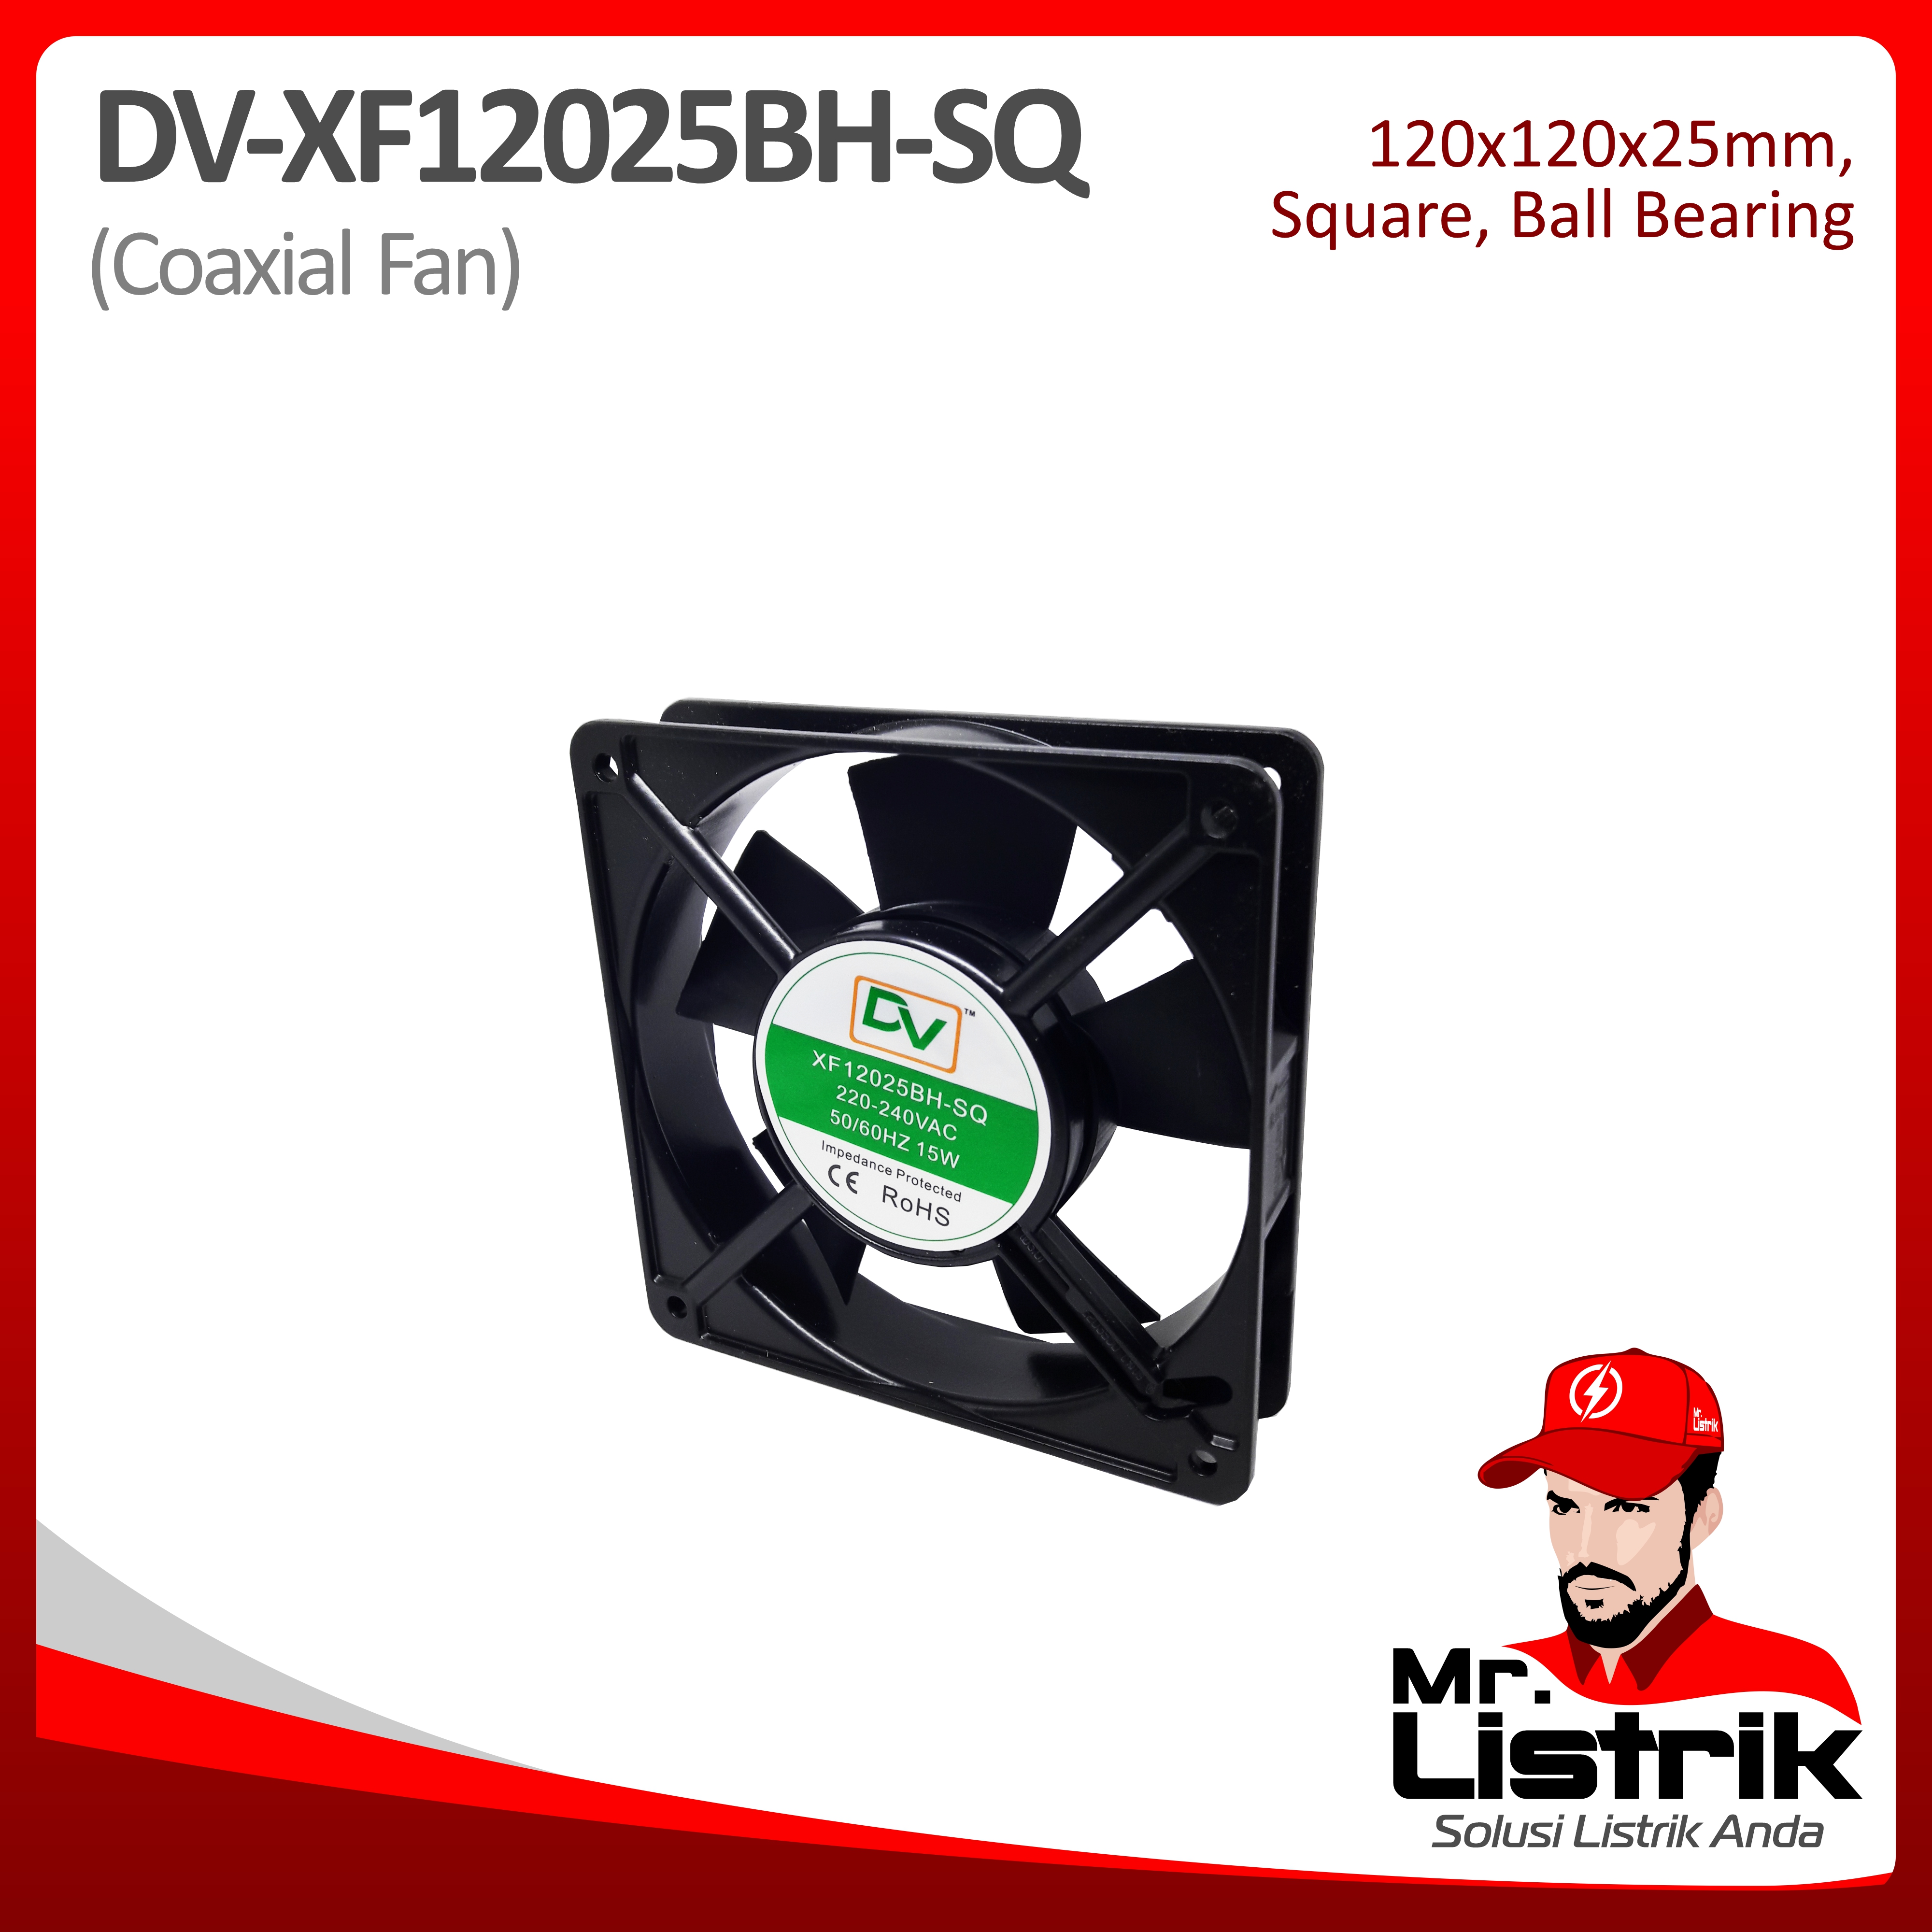 Coaxial Fan 120x120x25 Ball Bearing Square DV XF12025BH-SQ